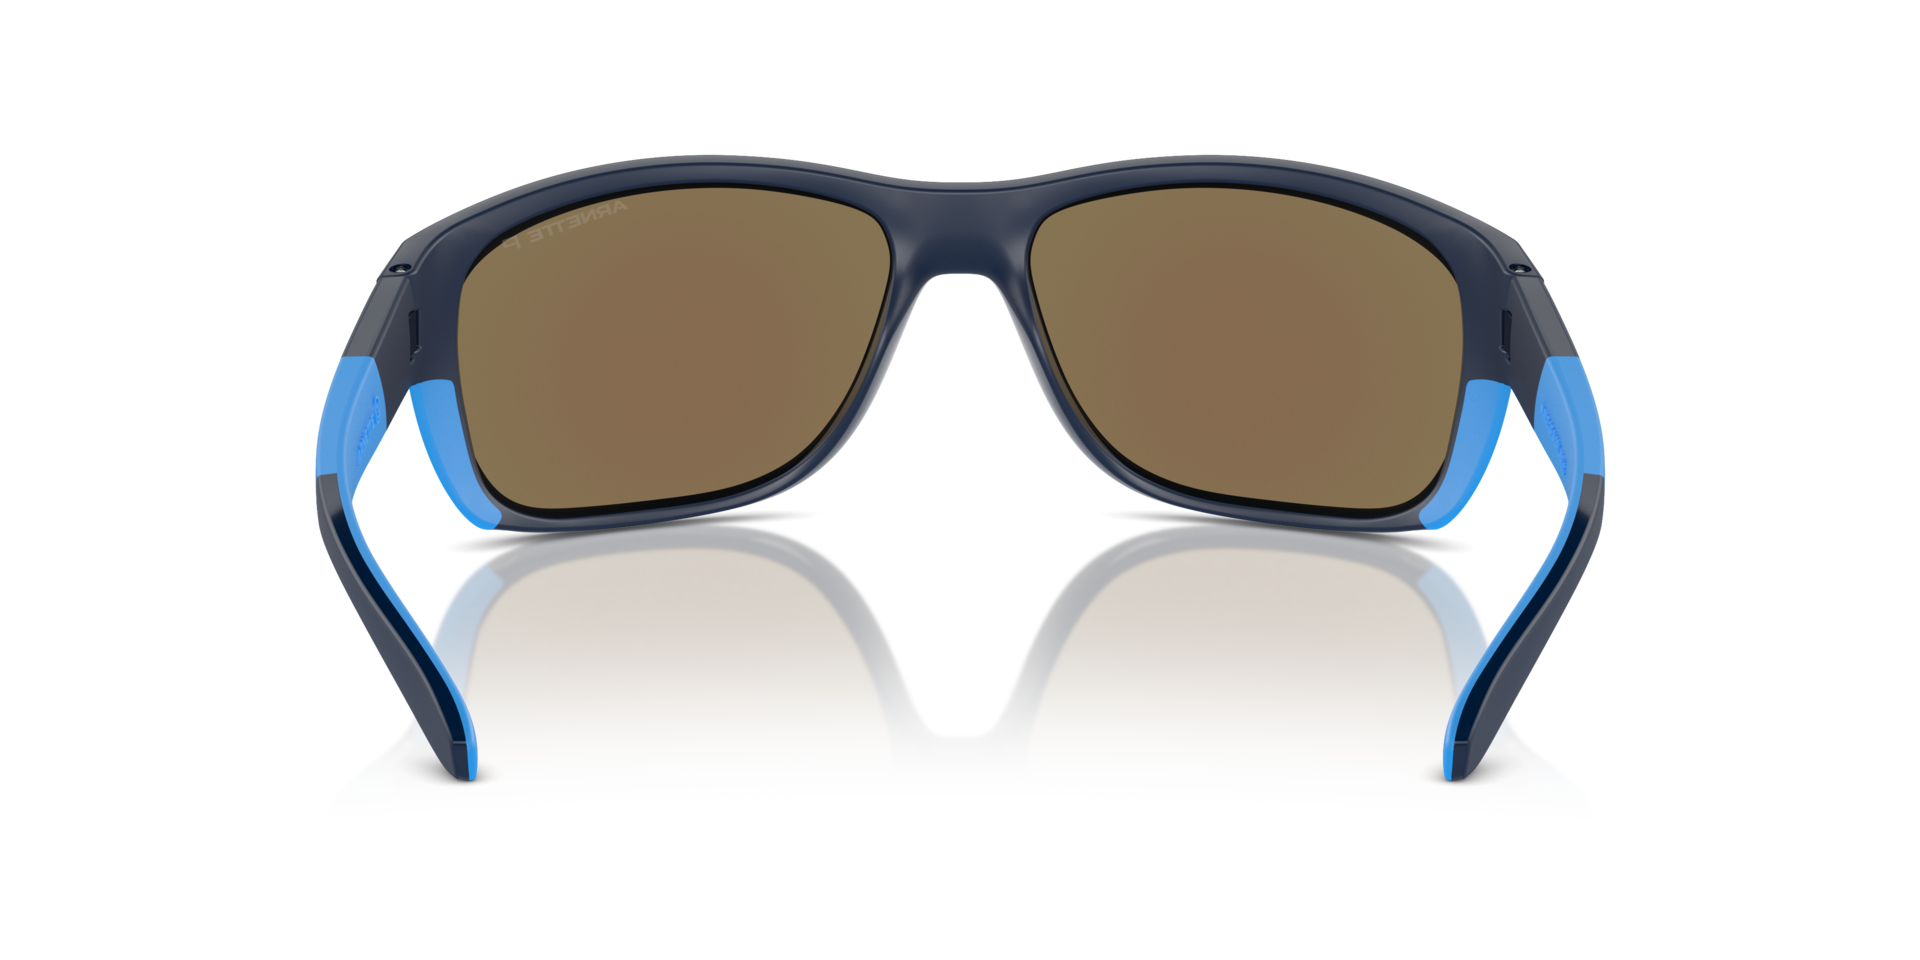 Das Bild zeigt die Sonnenbrille AN4337 275422 von der Marke Arnette in schwarz/blau.